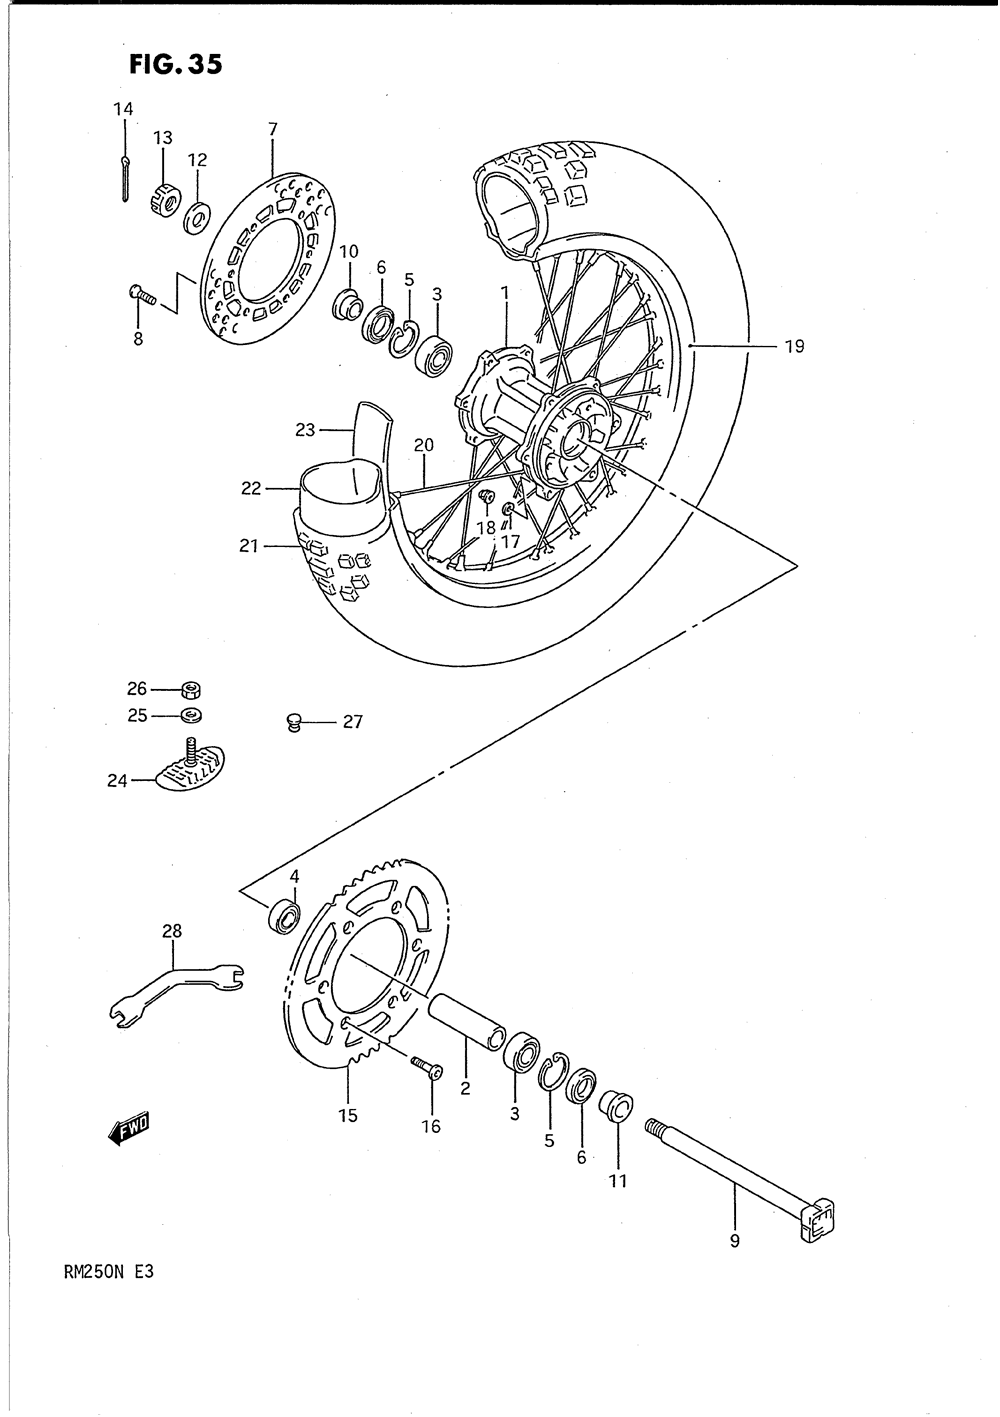 Rear wheel (model k)